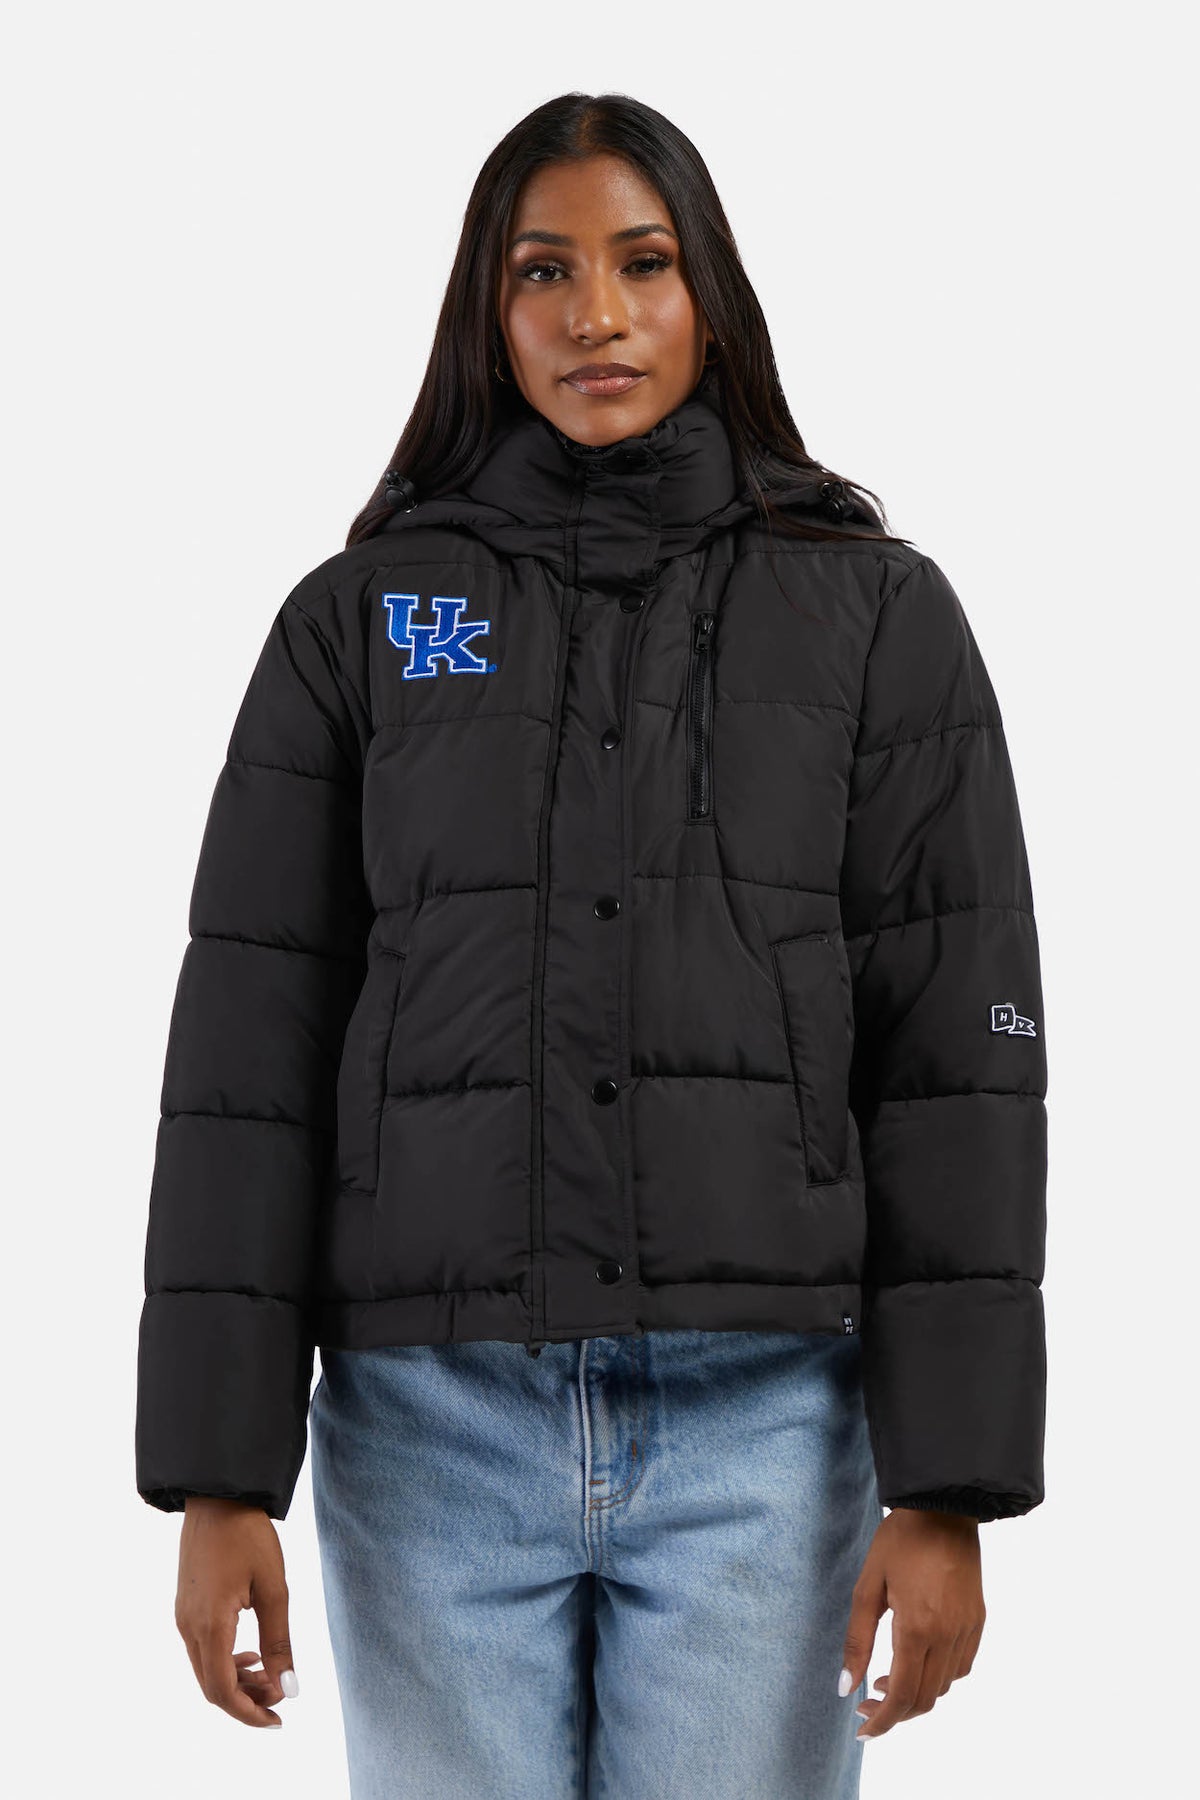 Kentucky Puffer Jacket